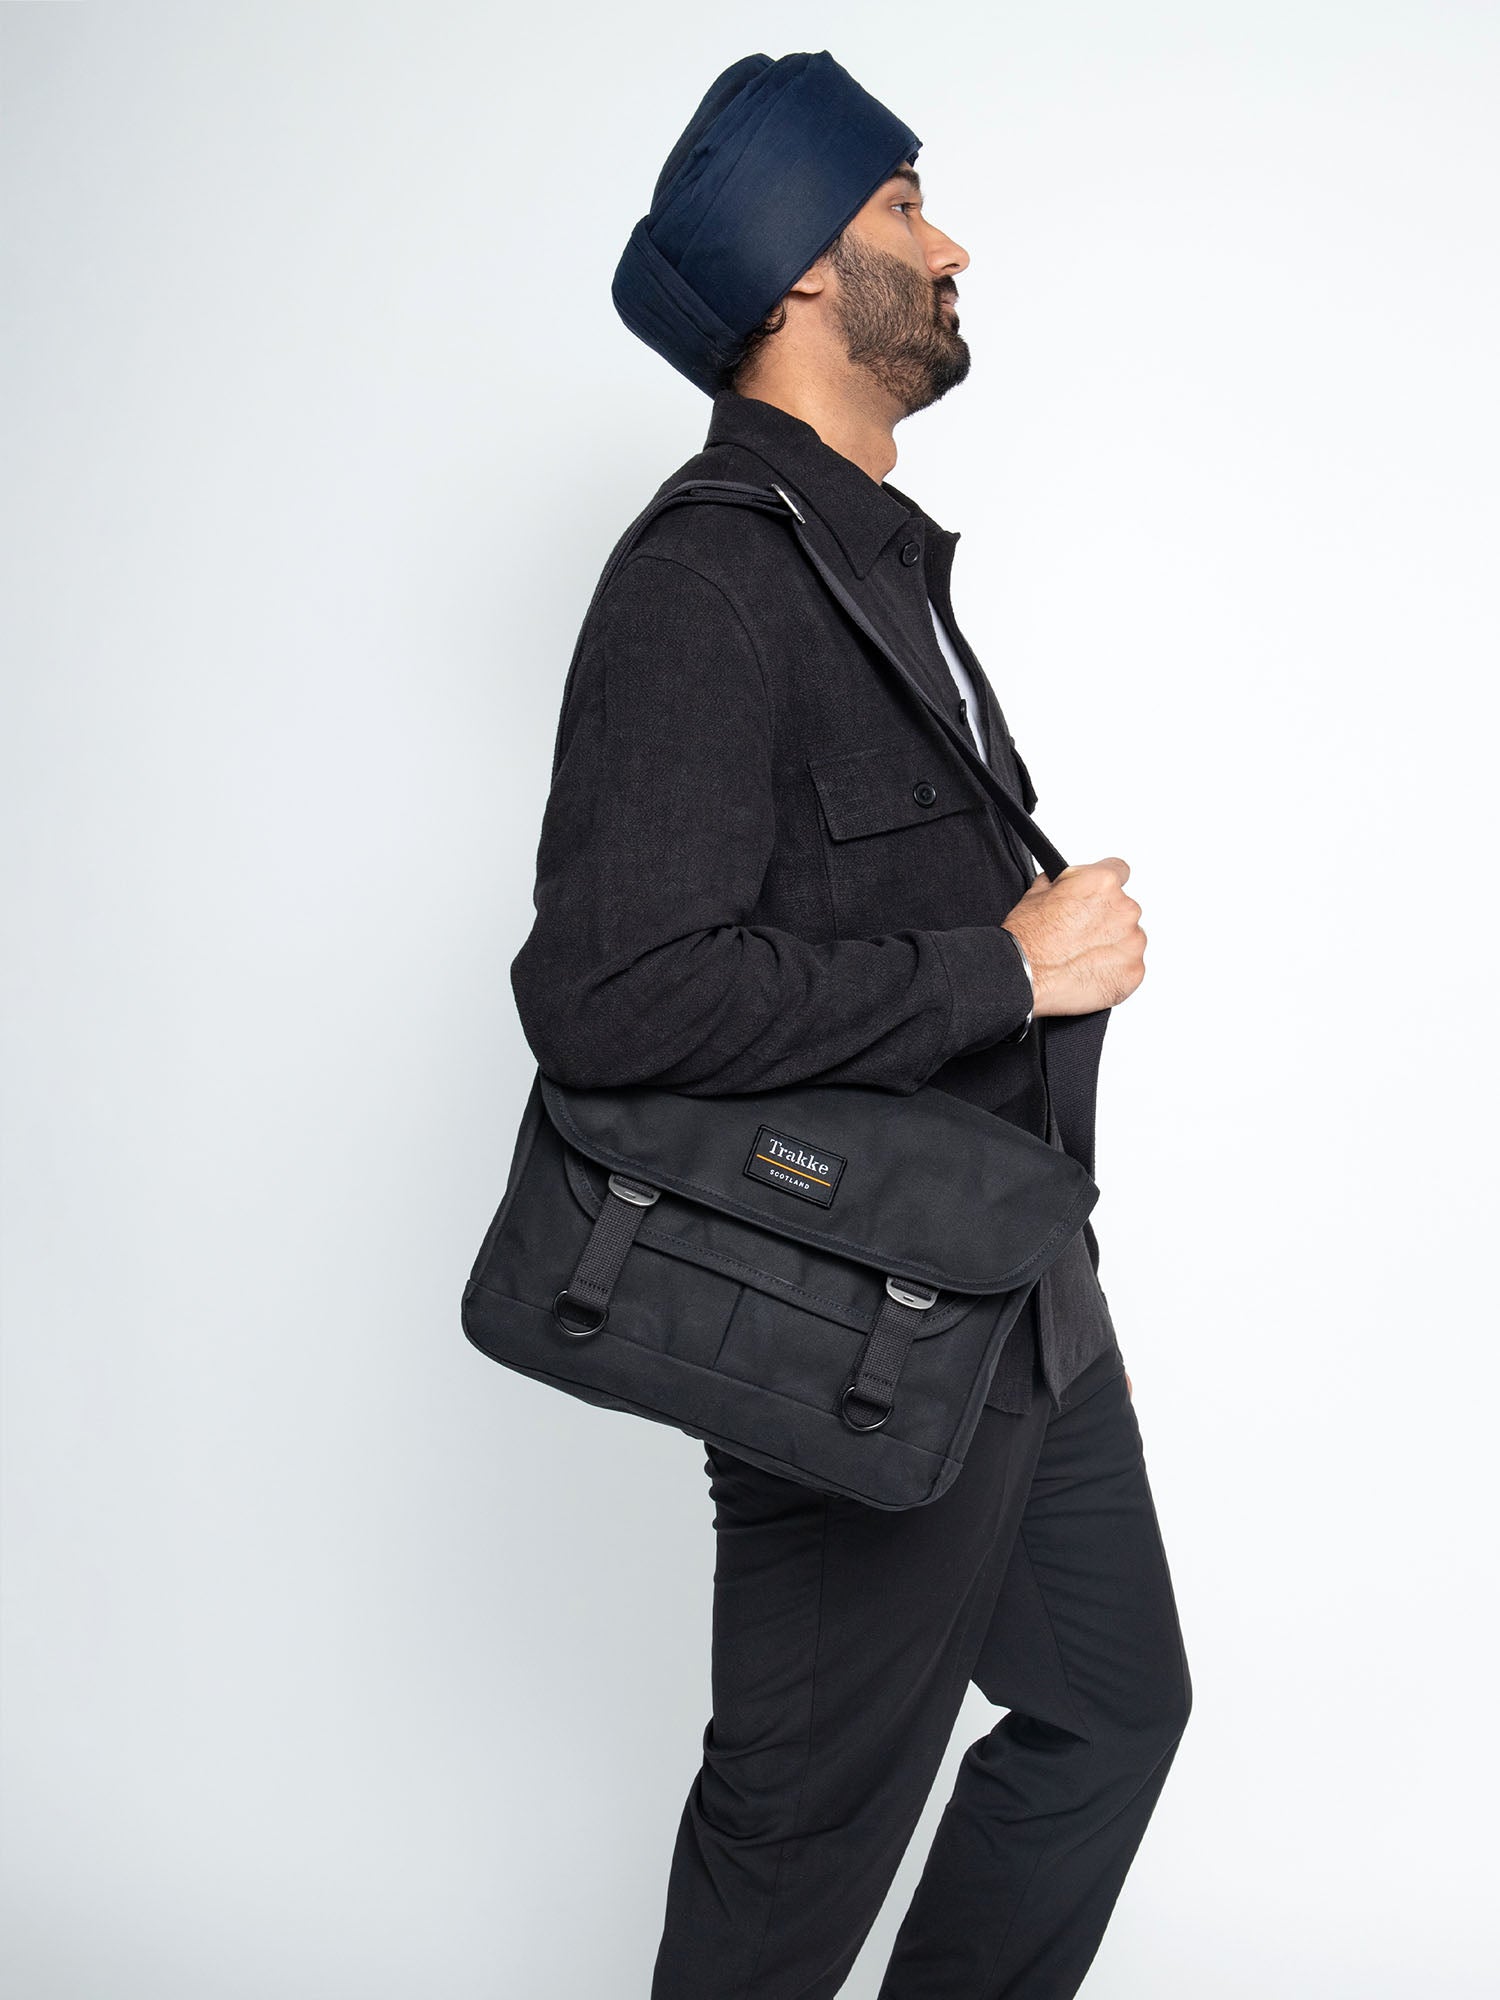 Bairn Mini Messenger – Everyday Carry Messenger Bag - Trakke